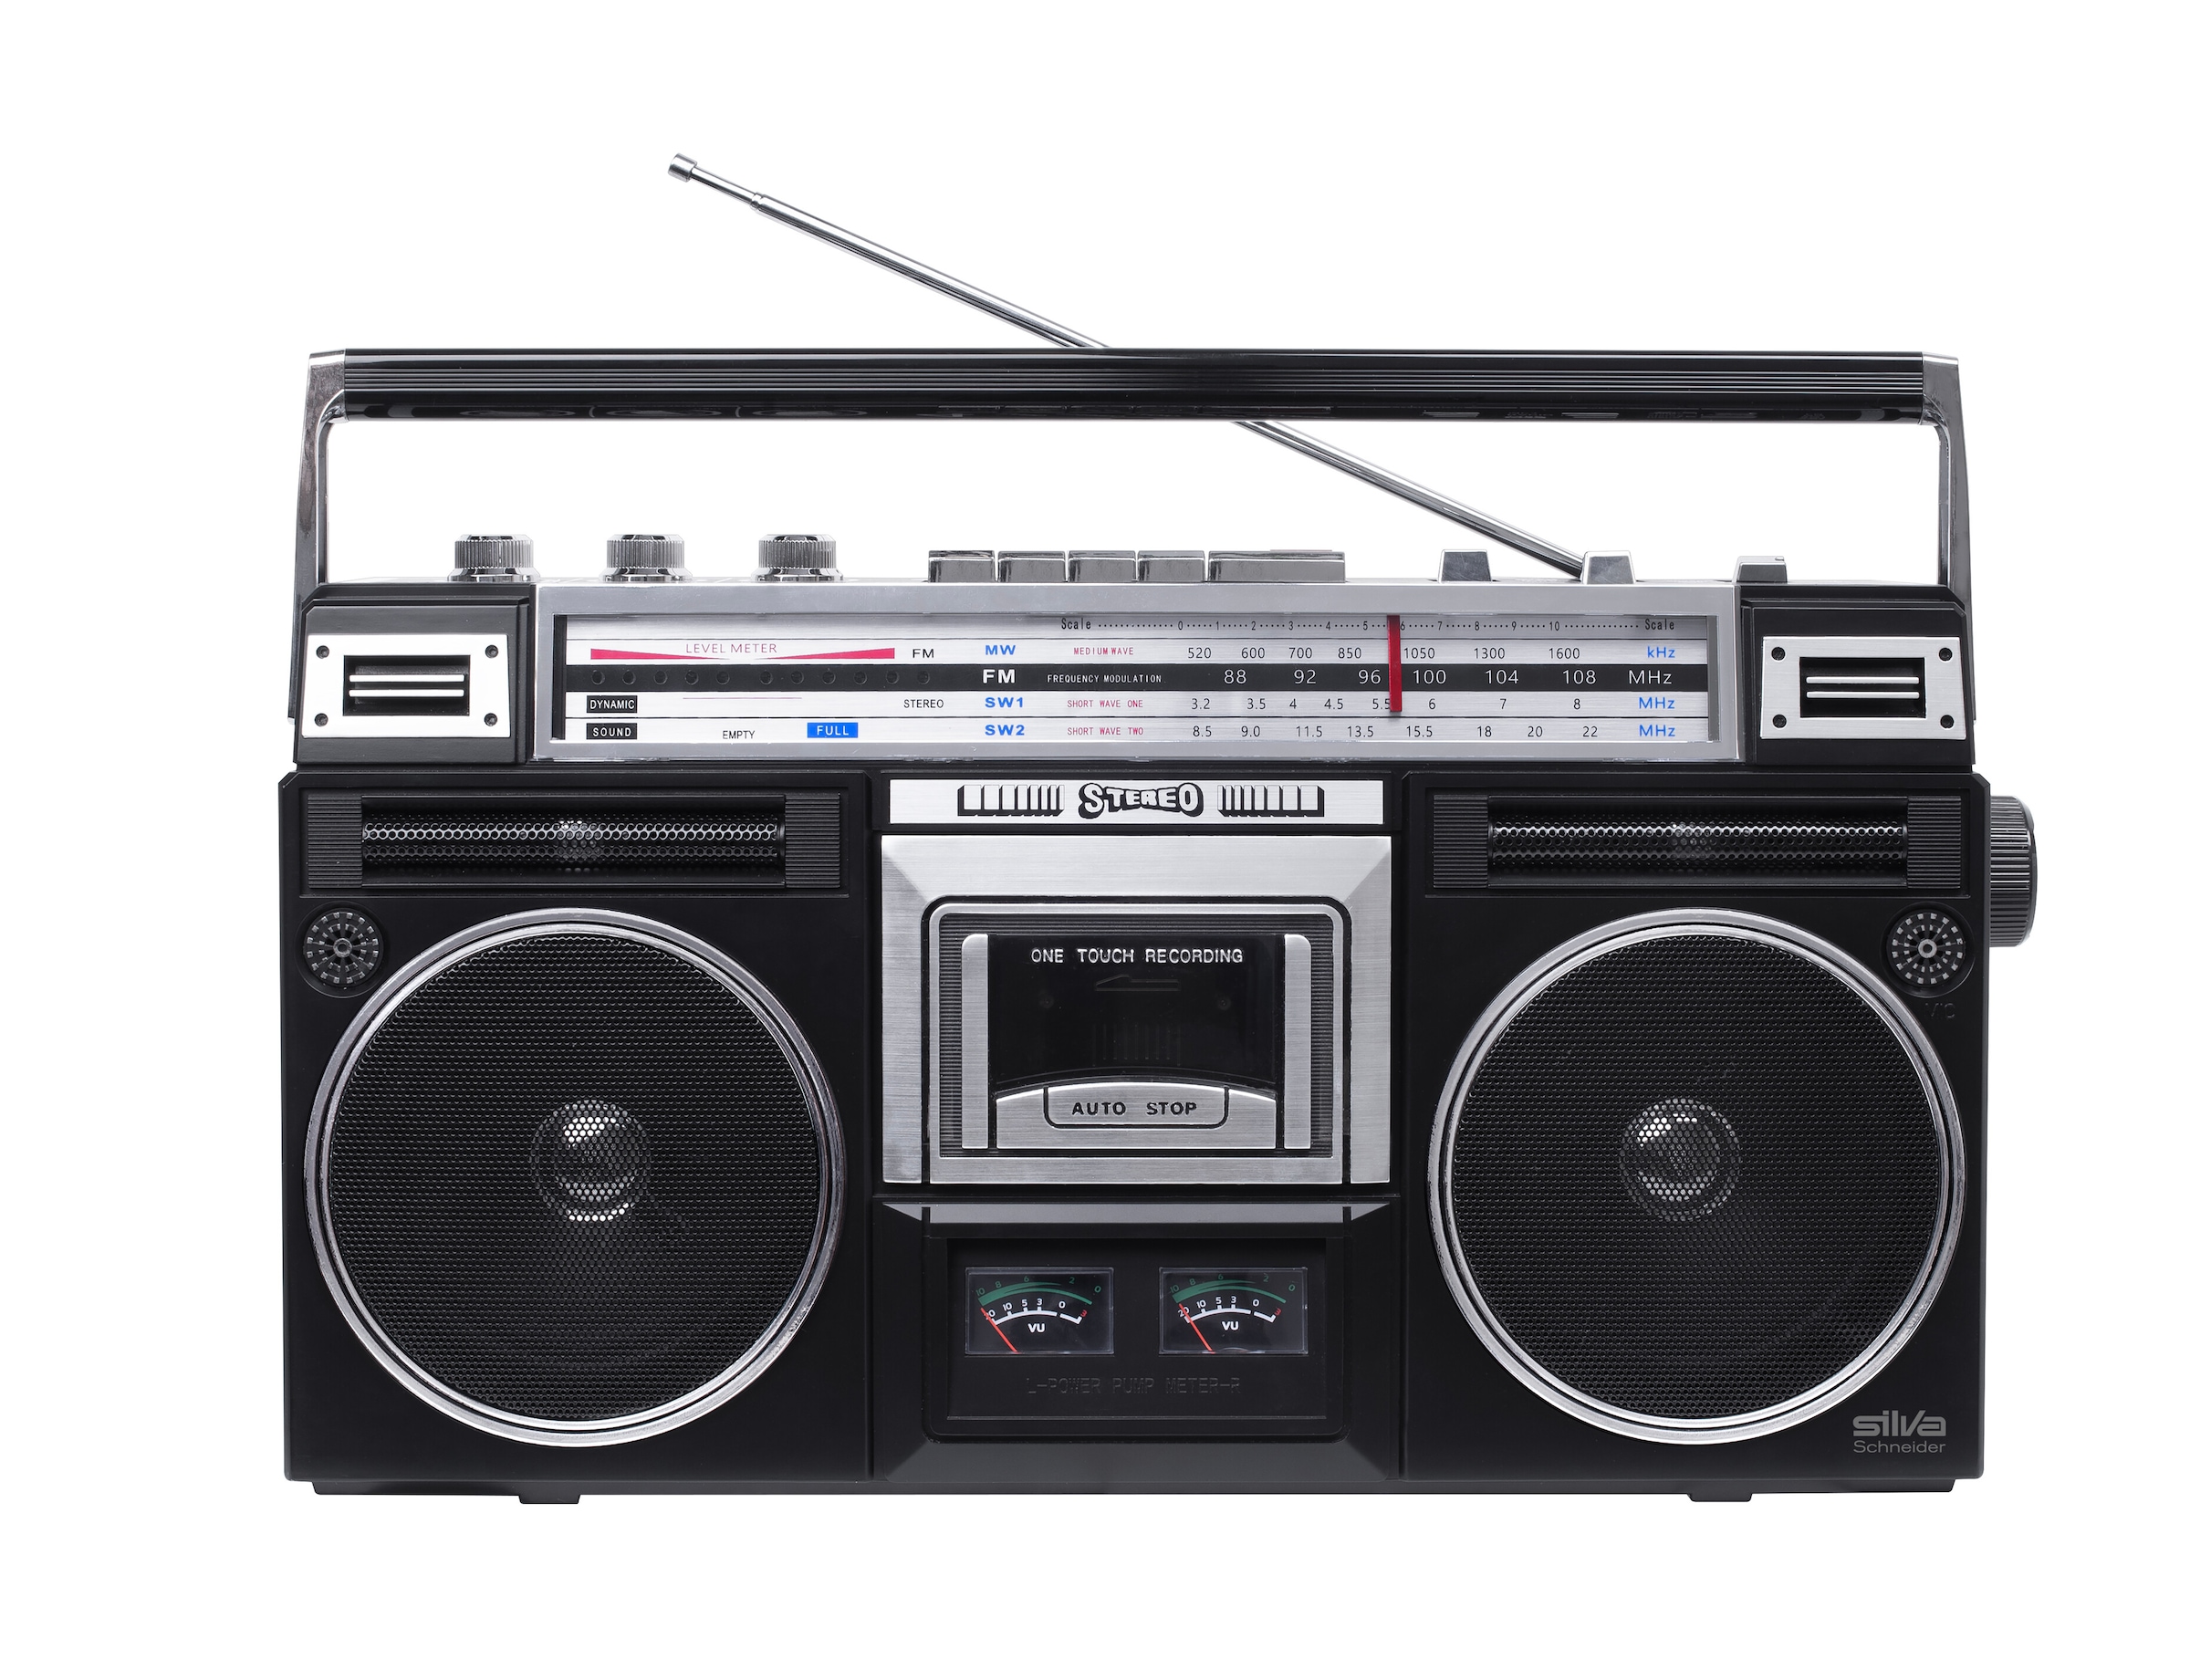 Silva Schneider Radio »PCR 1980 Ghettoblaster«, (Bluetooth) kaufen bei OTTO